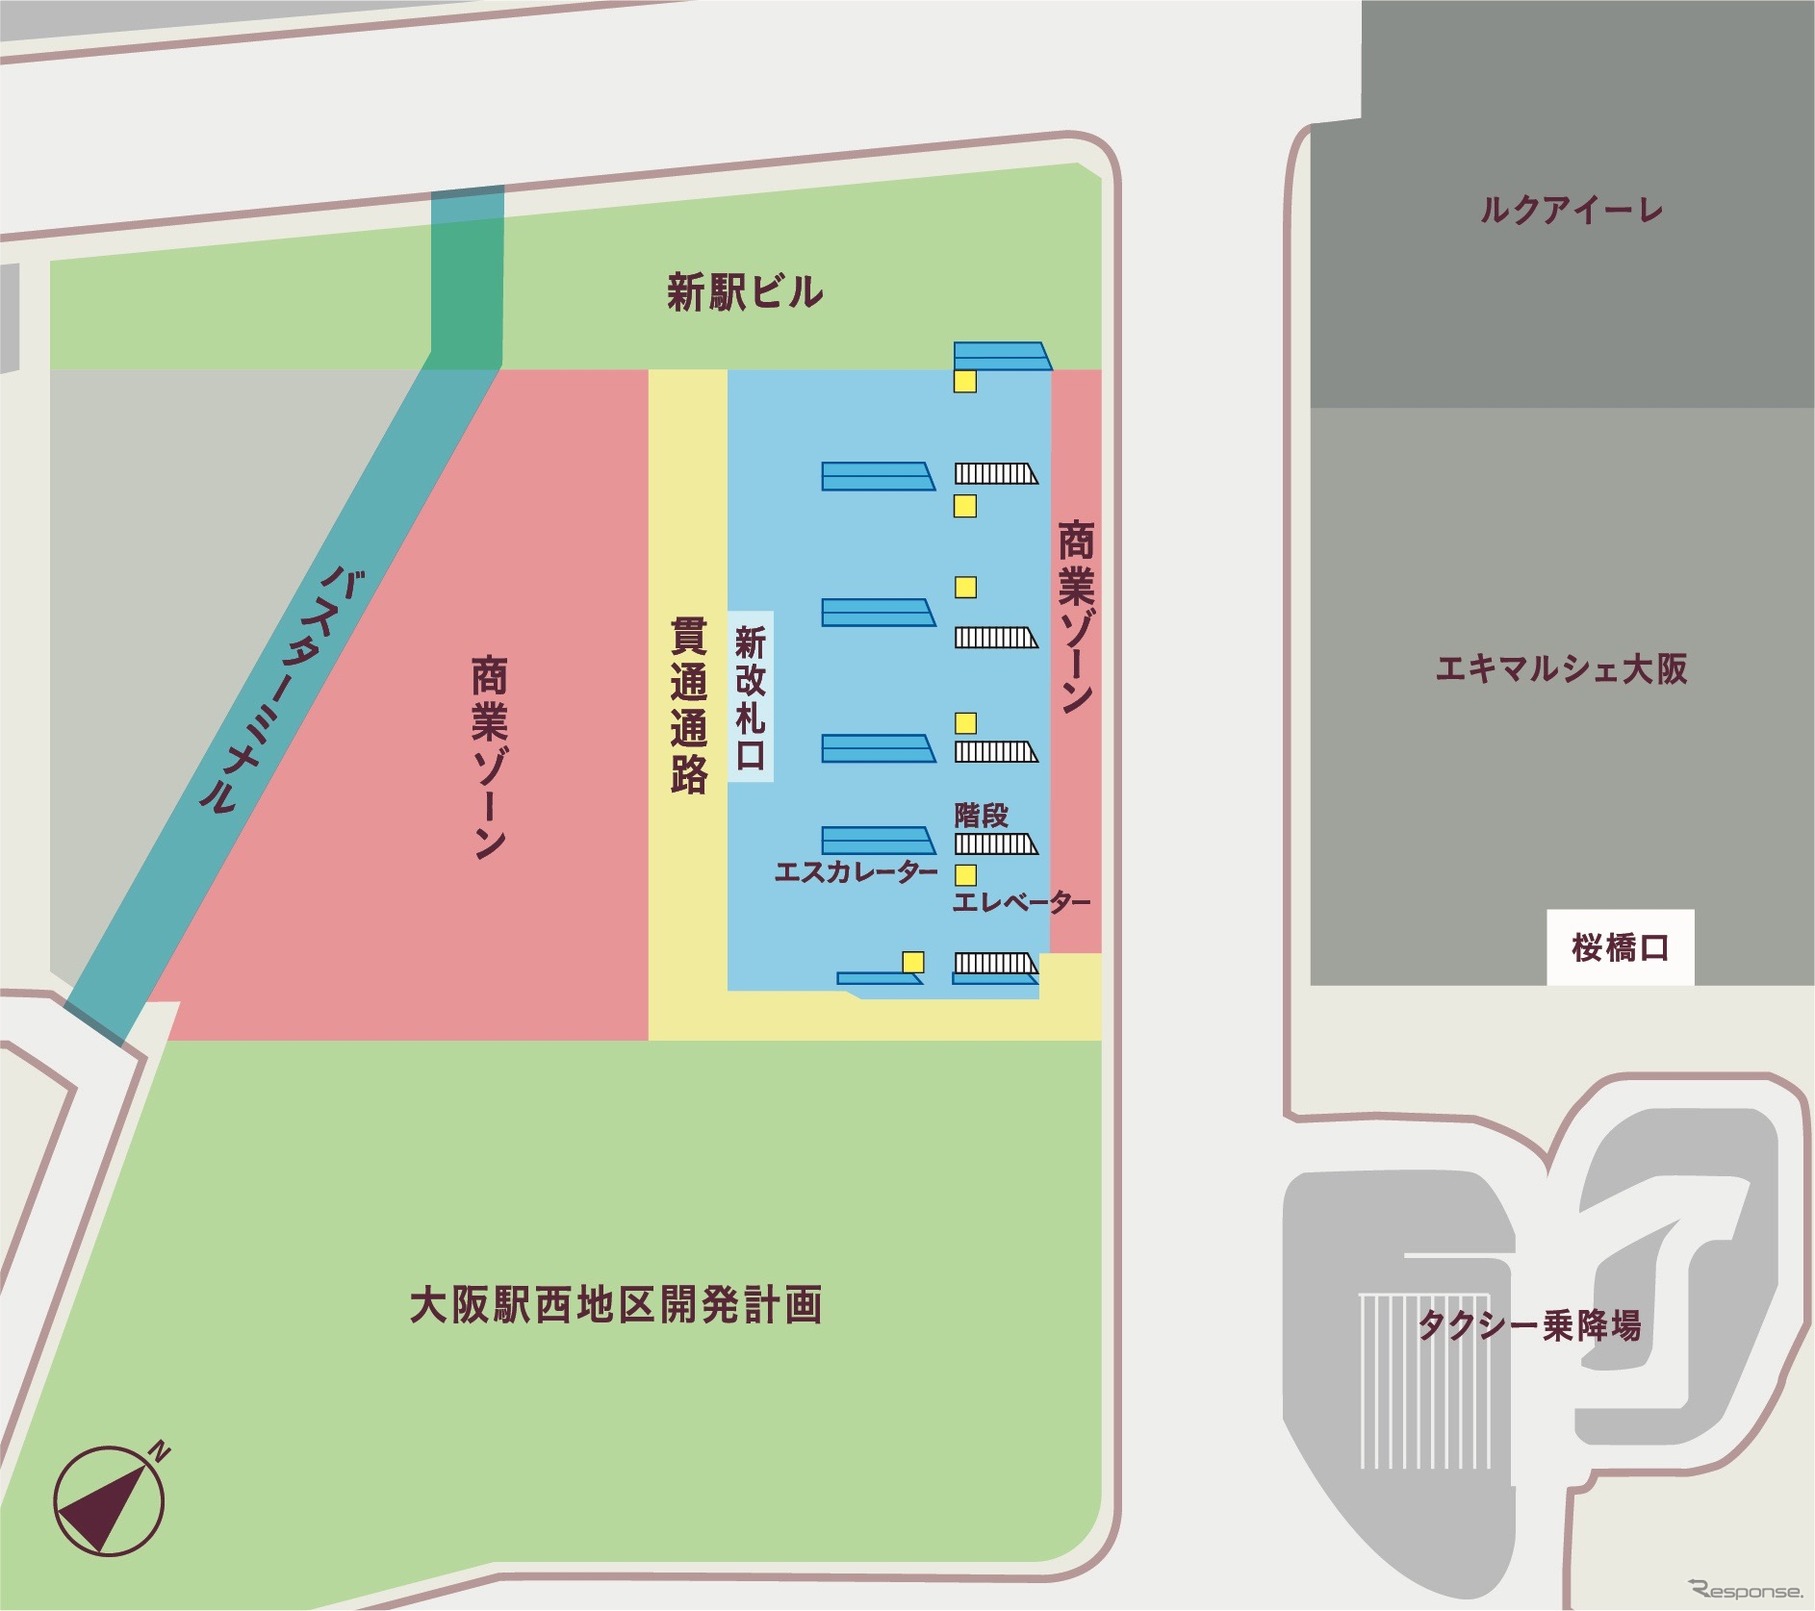 整備される西側の平面図。大阪環状線のホームが西側へ拡張される。